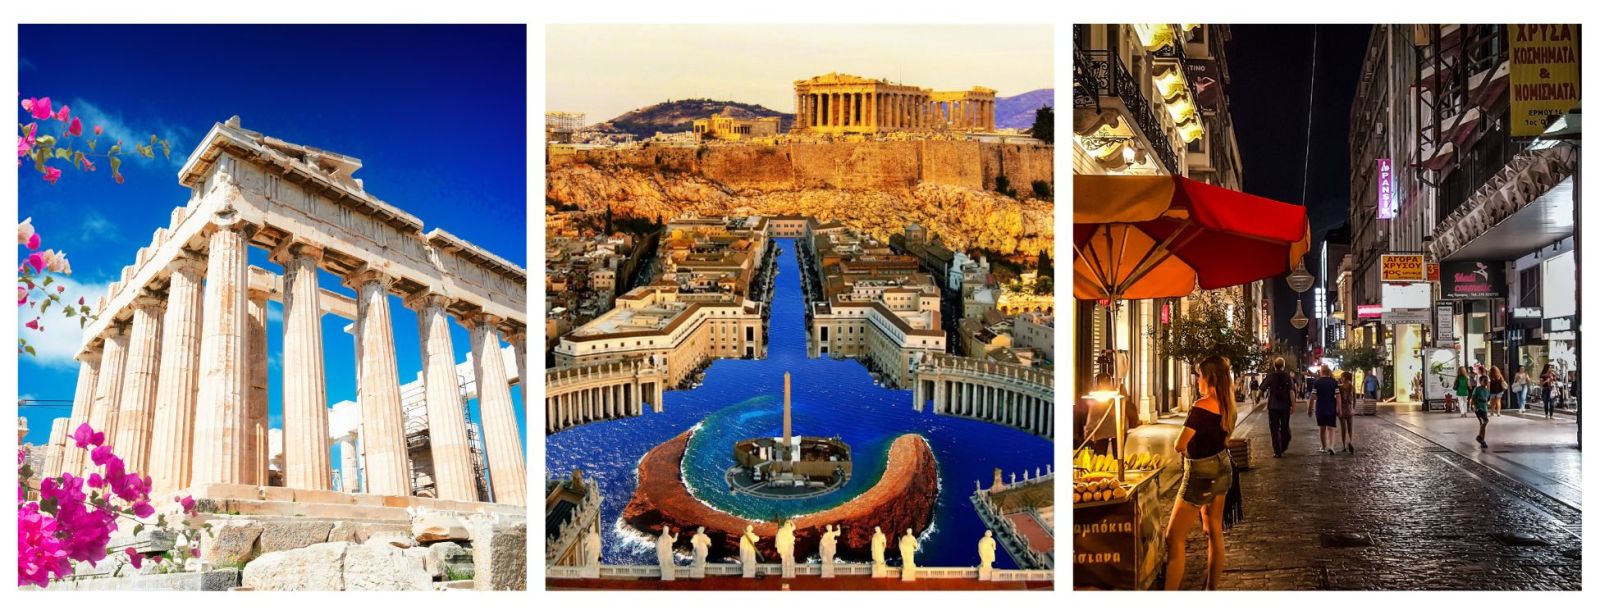 Athens Tourist Sites